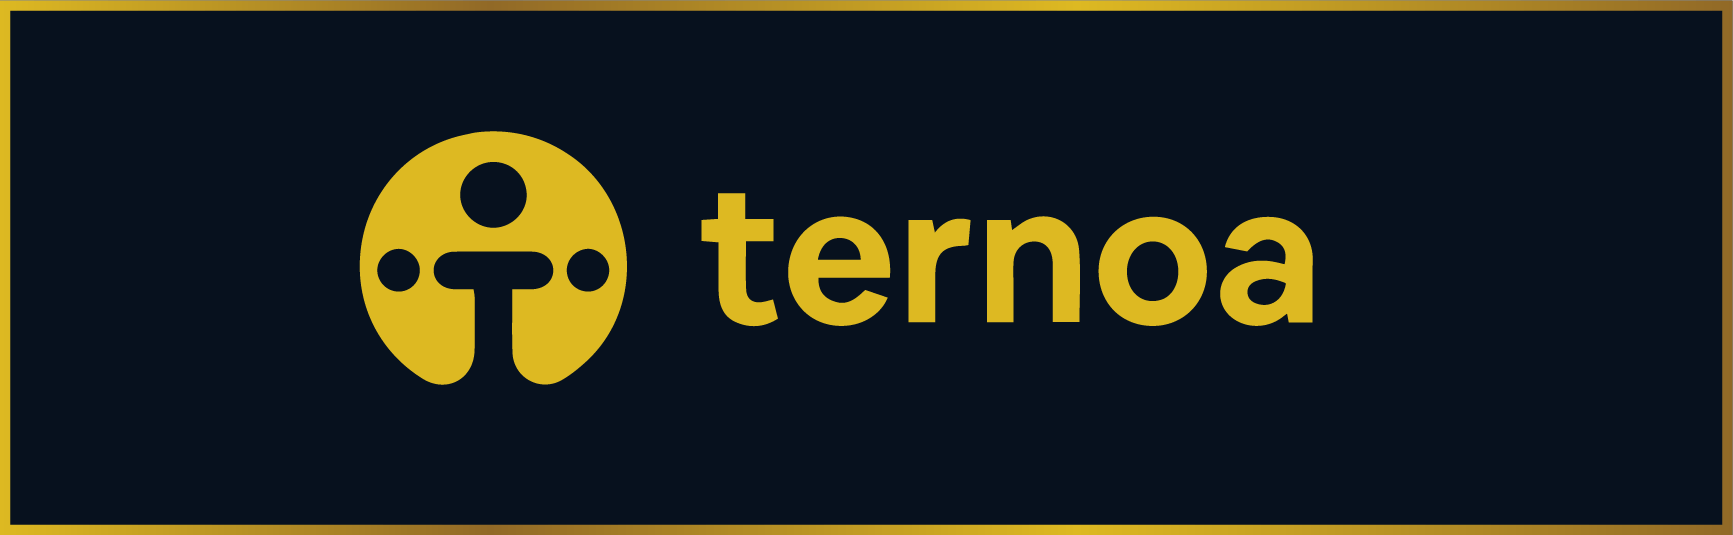 Ternoa : 150 000$ pour soutenir la décentralisation de sa blockchain